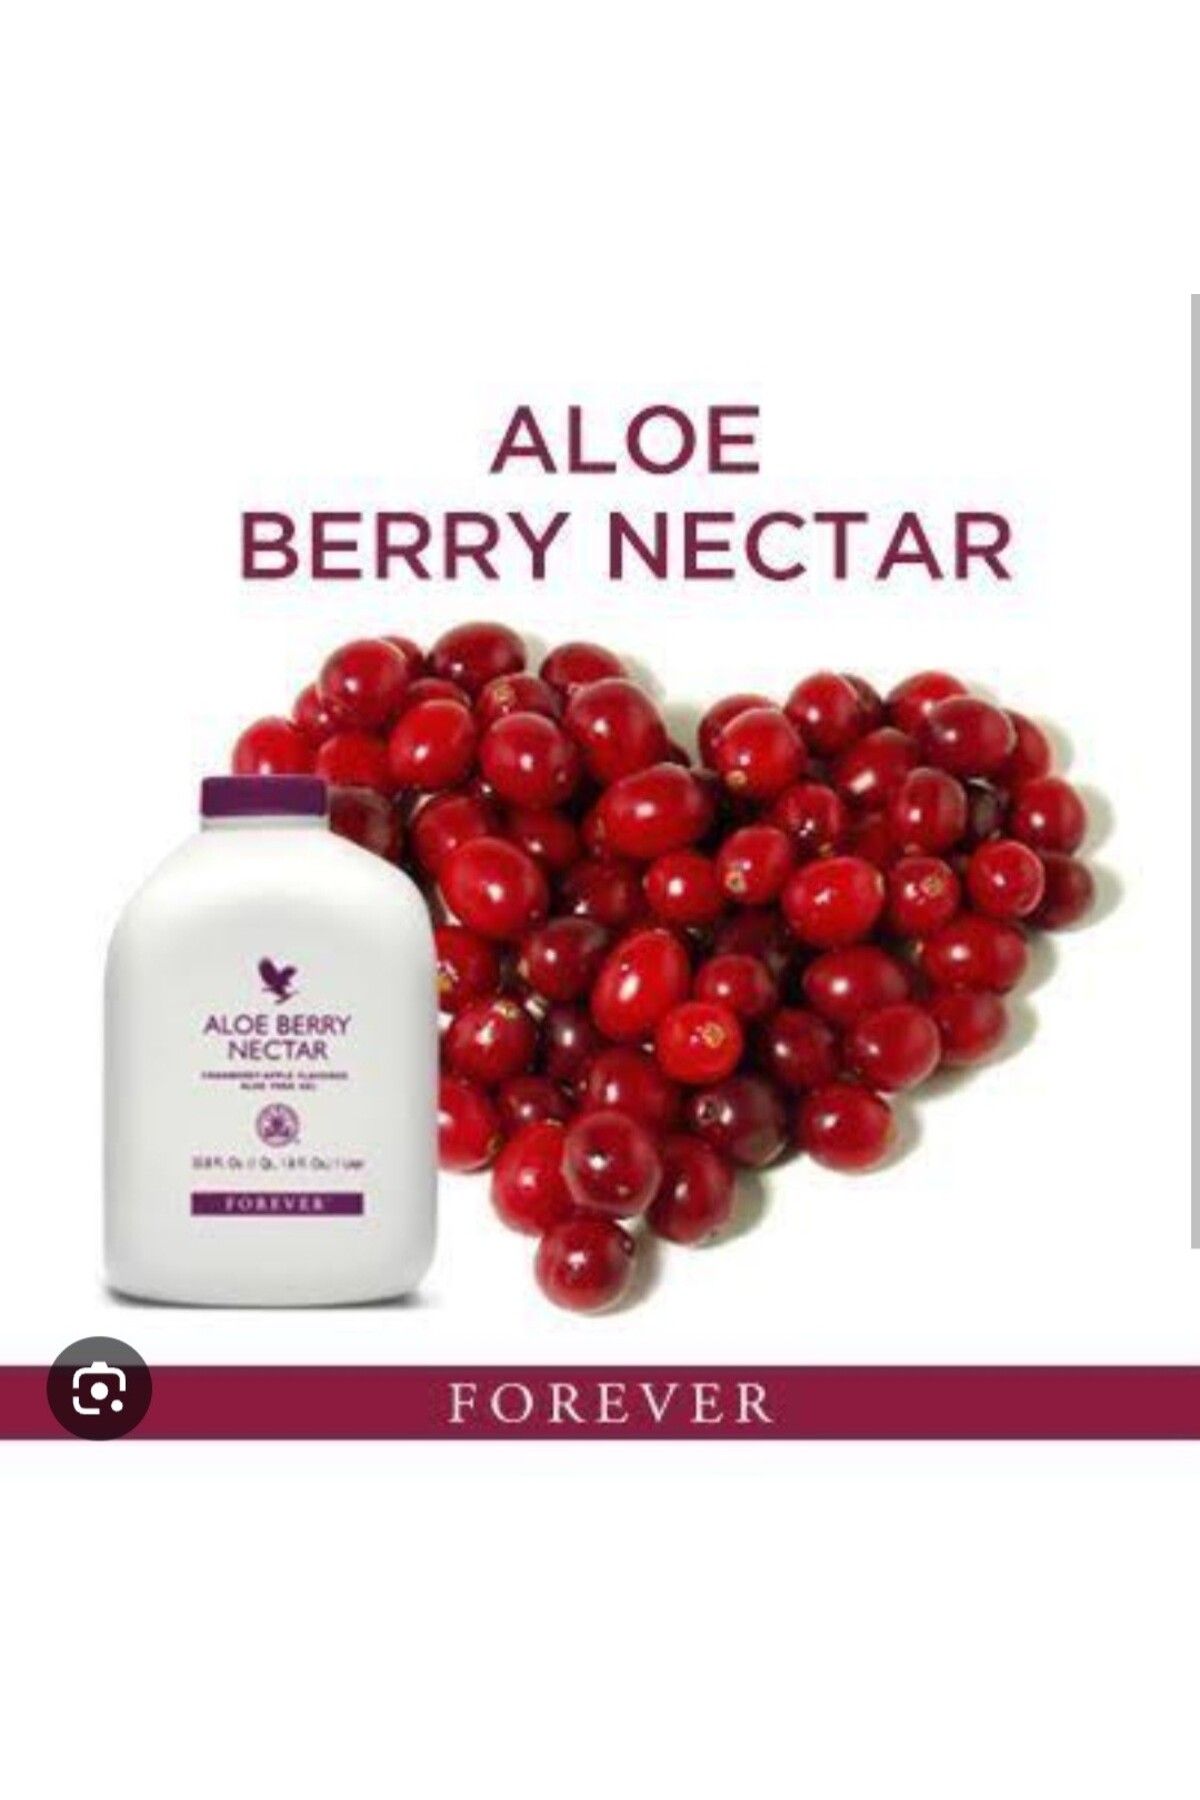 Forever Aloe Berry Nectar -034